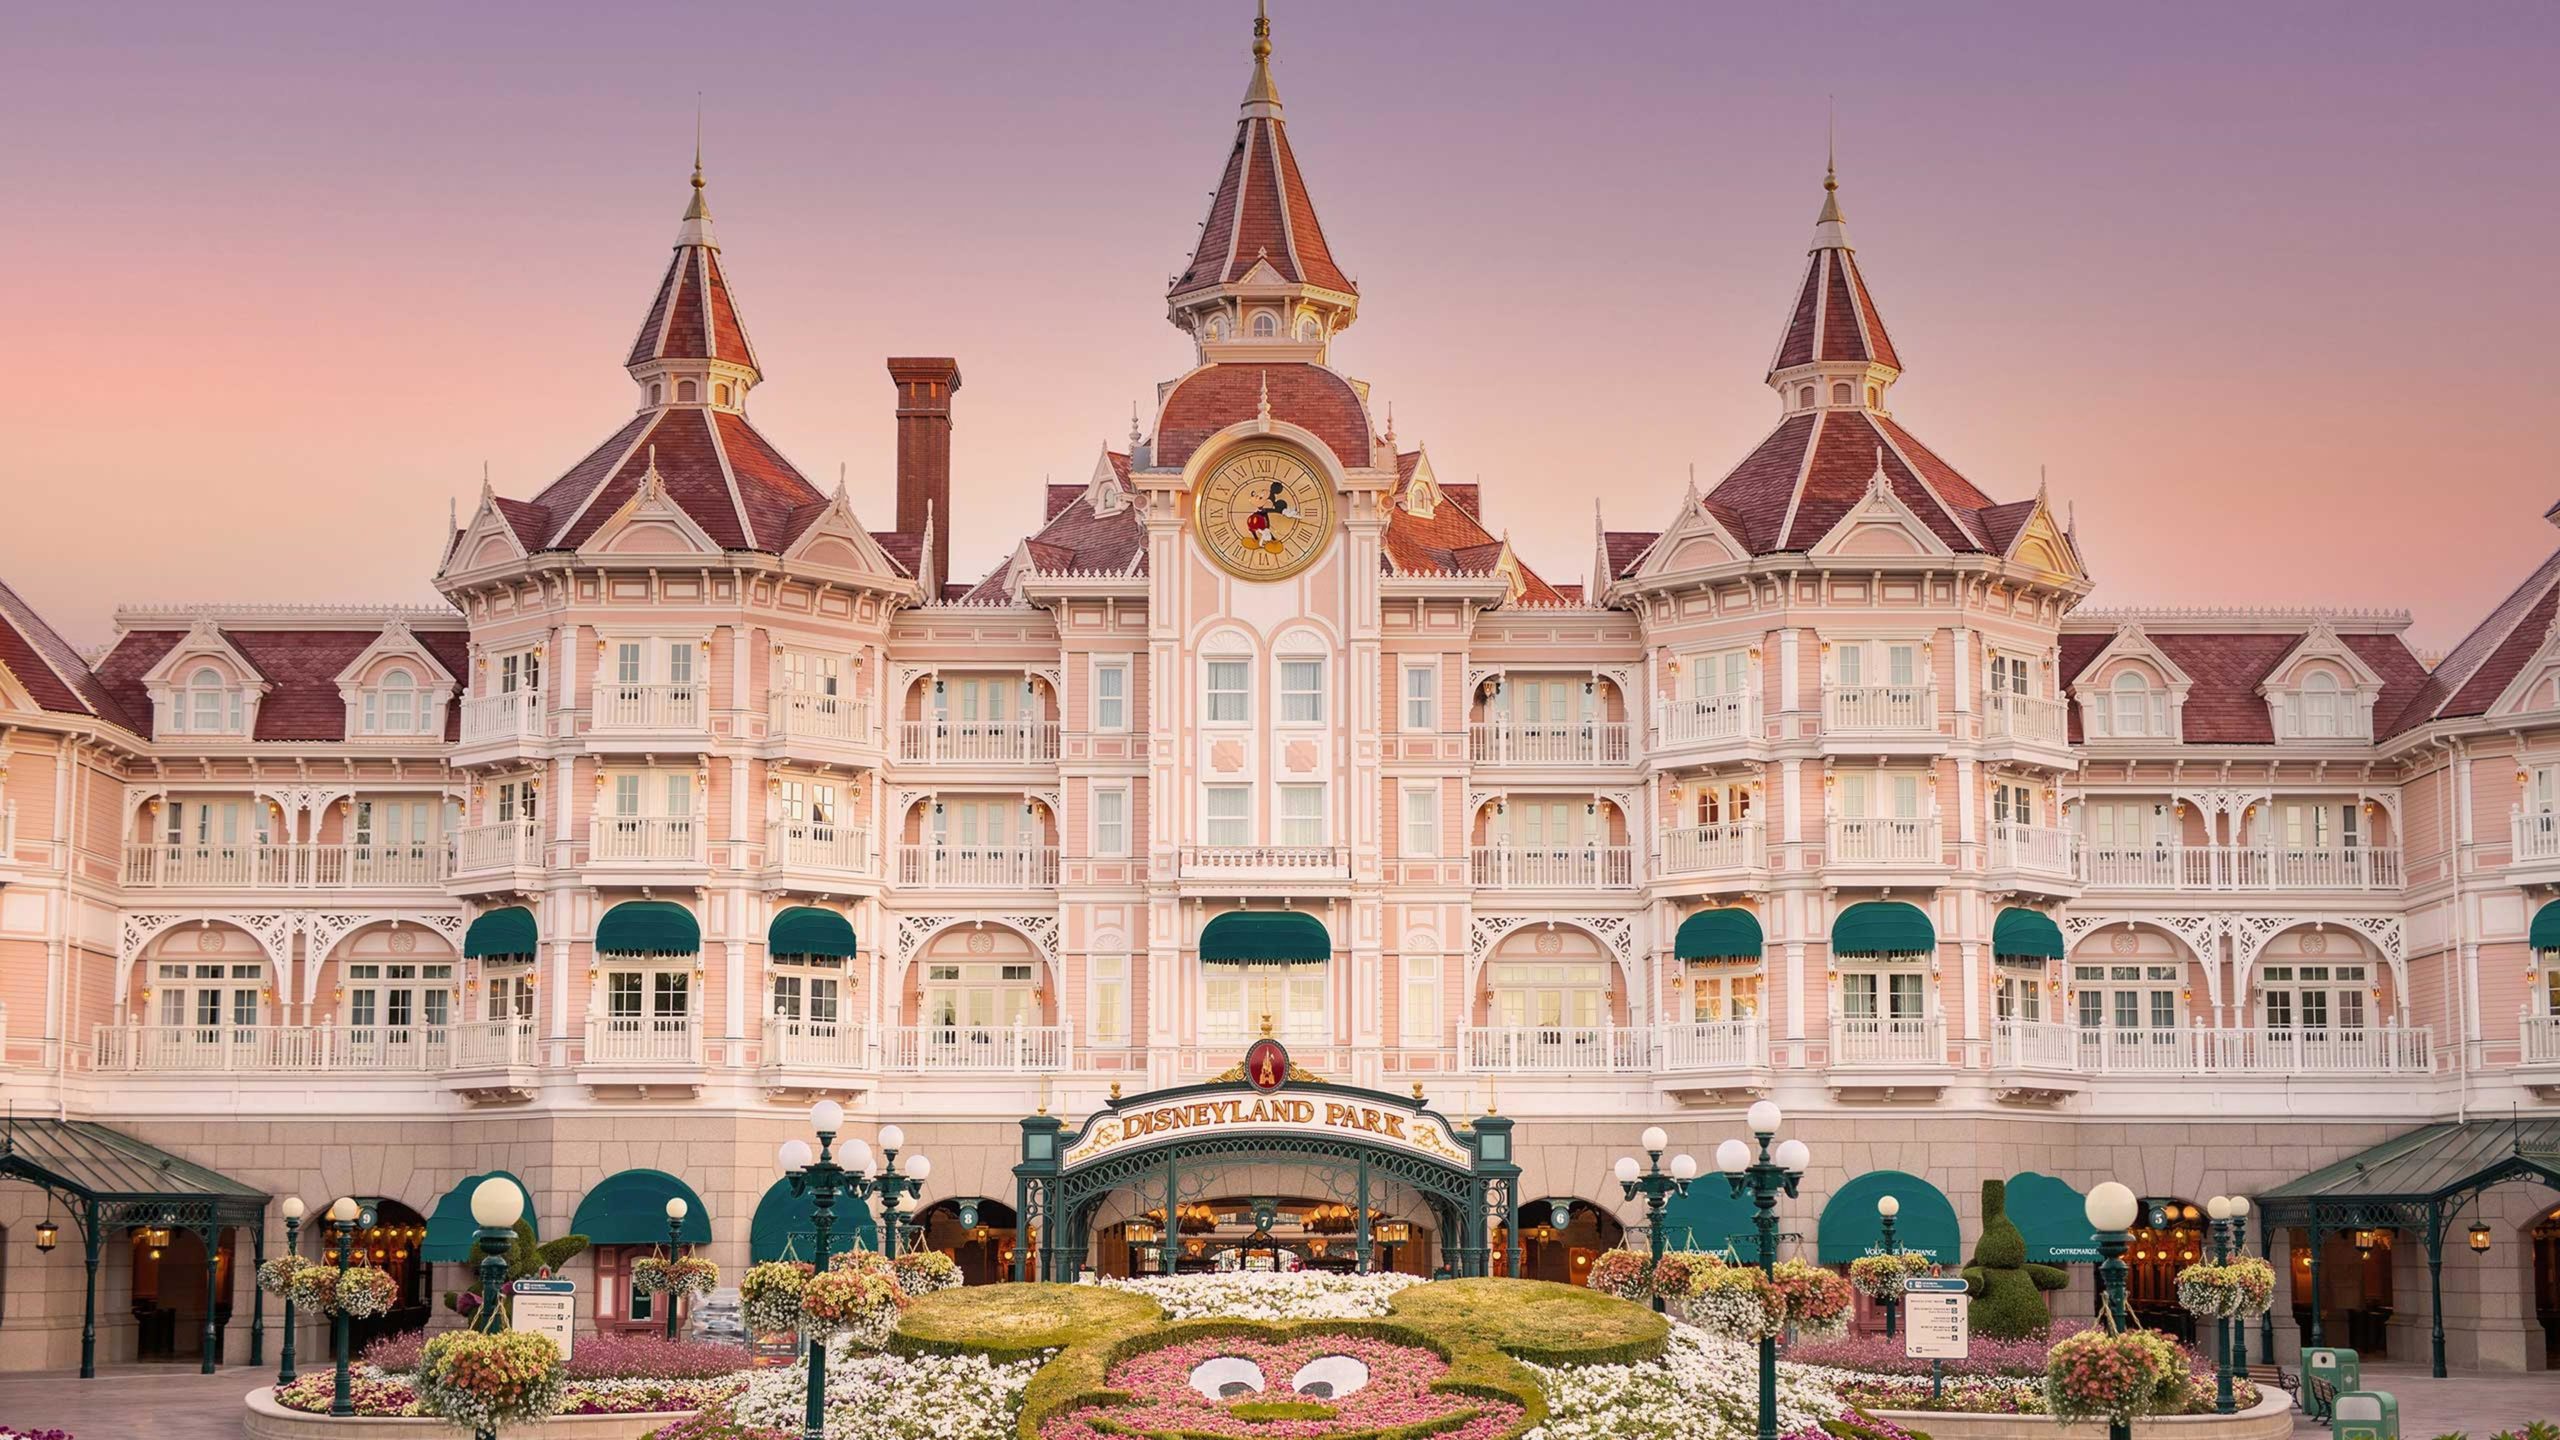 Disneyland Paris Offers Exquisite Glimpse into New Resort Design